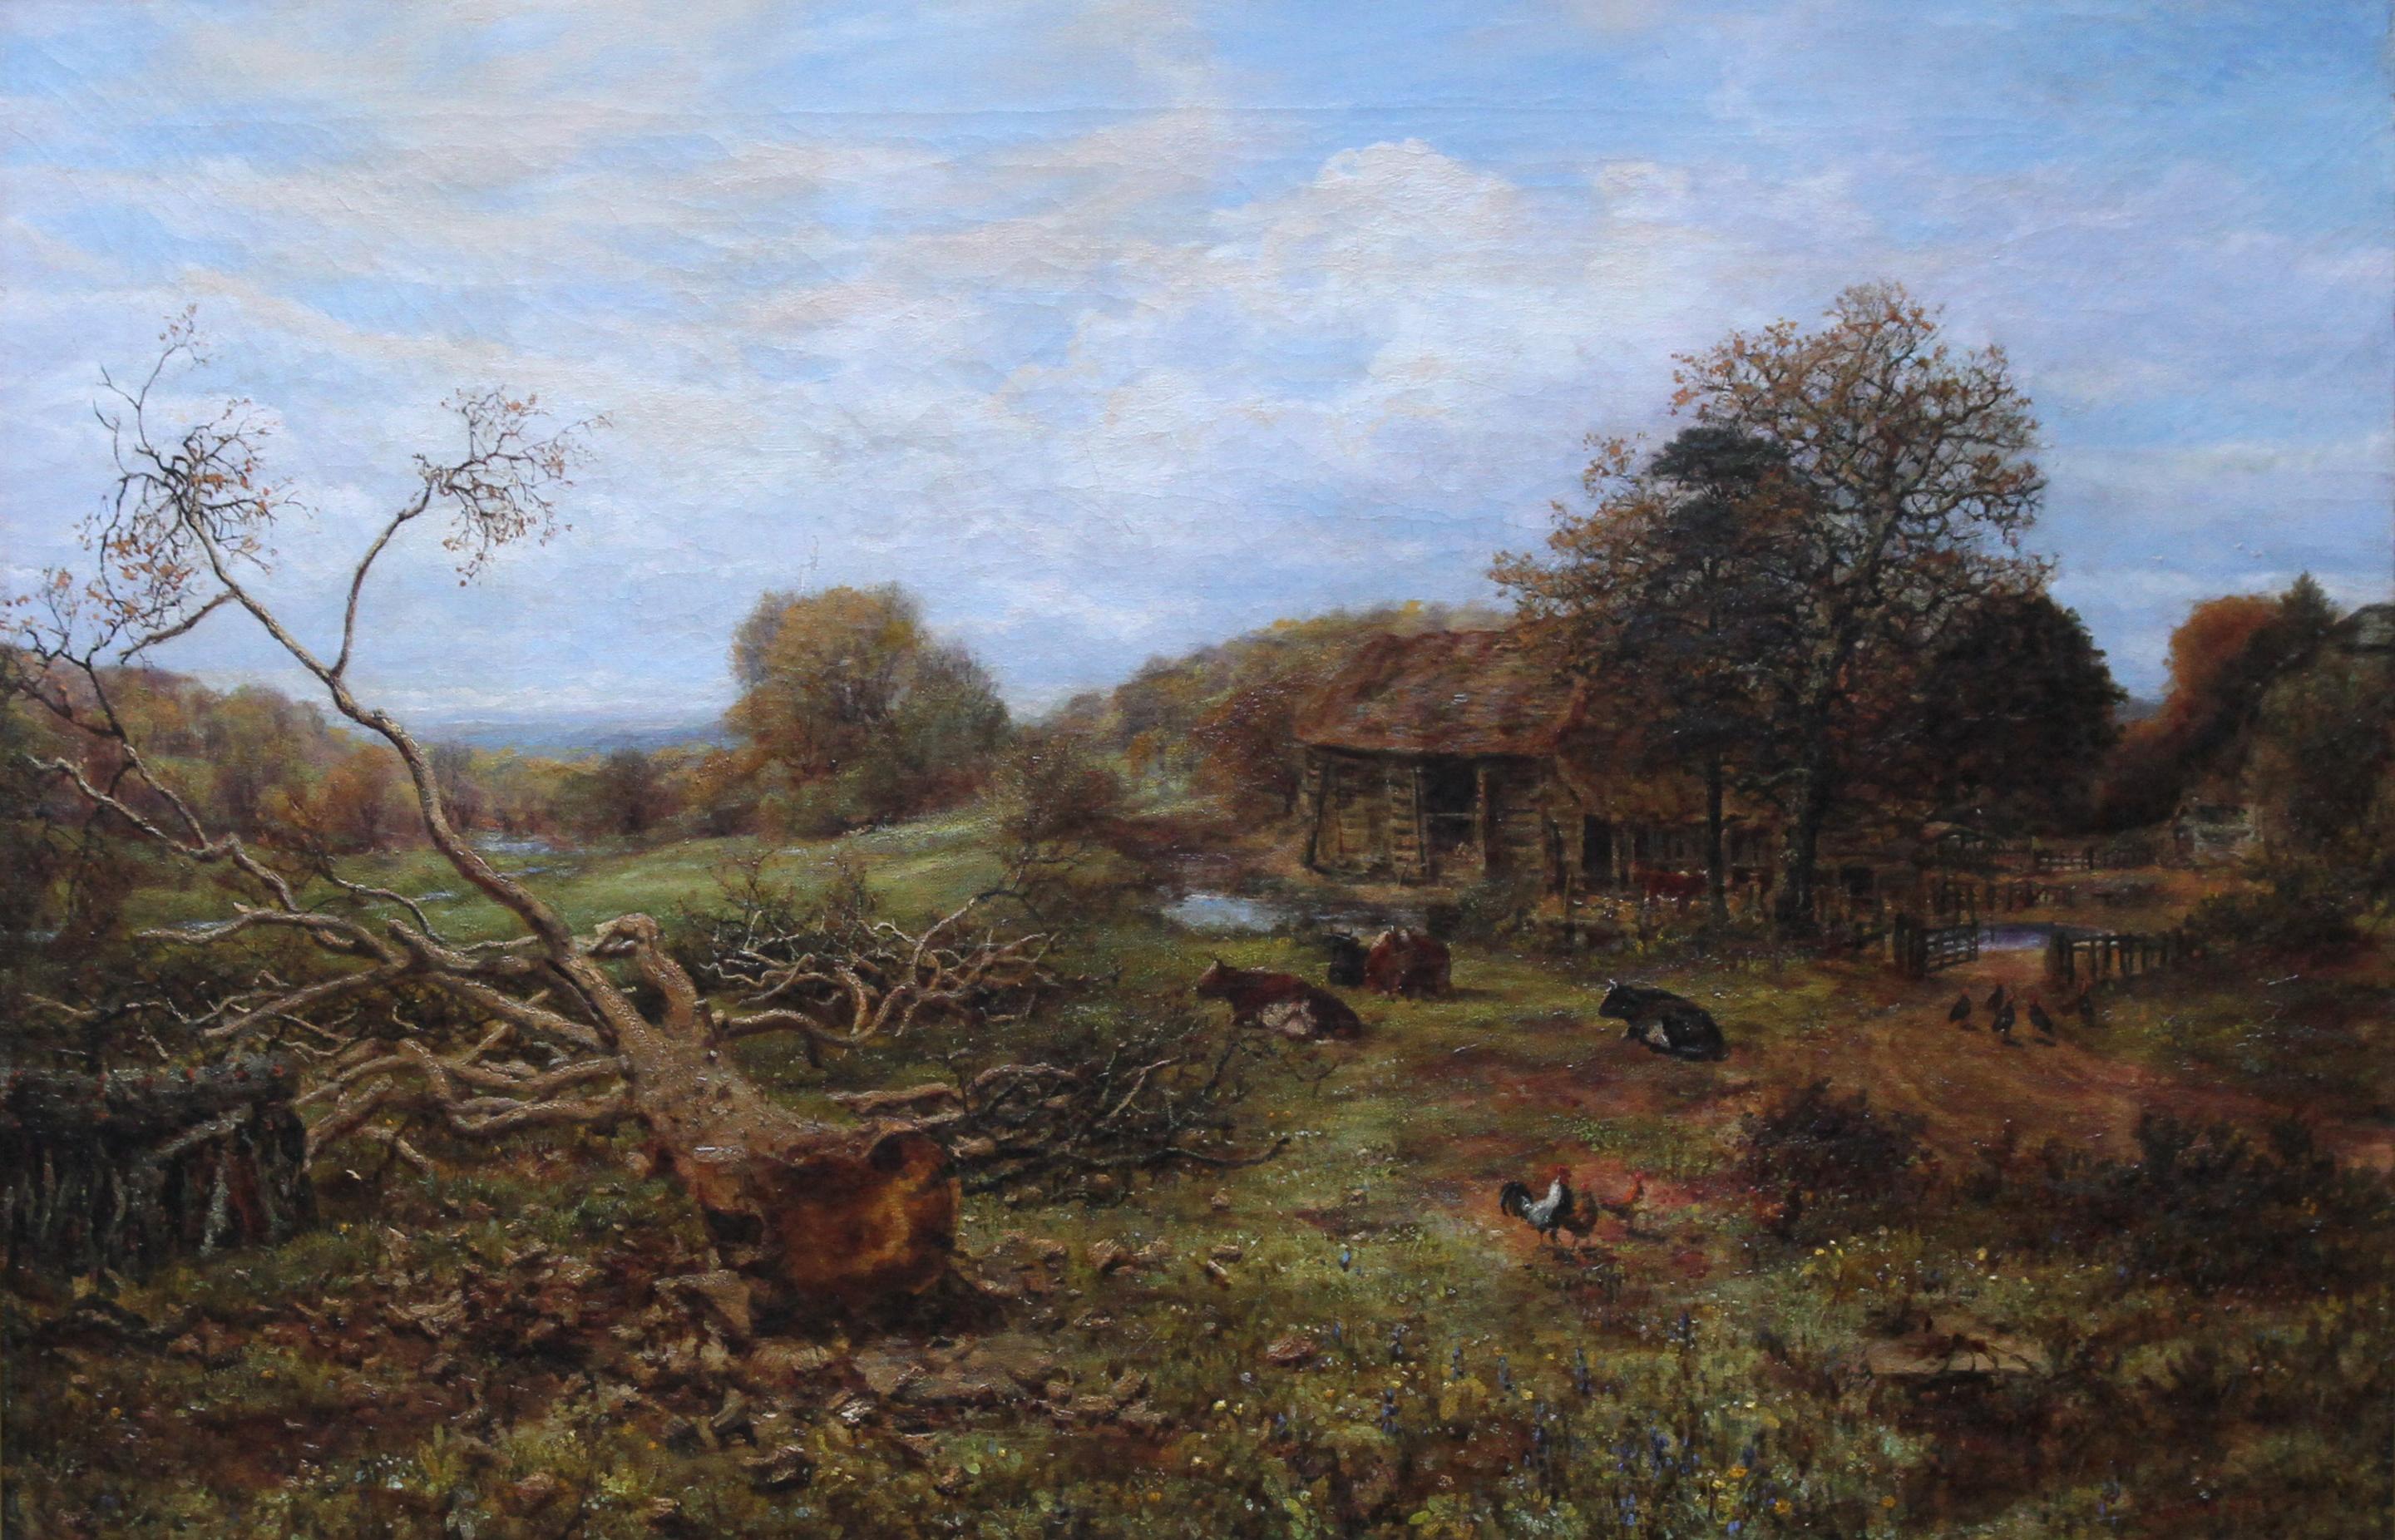 Paysage avec bétail - Surrey - Art victorien britannique Peinture à l'huile du 19e siècle - Painting de George William Mote